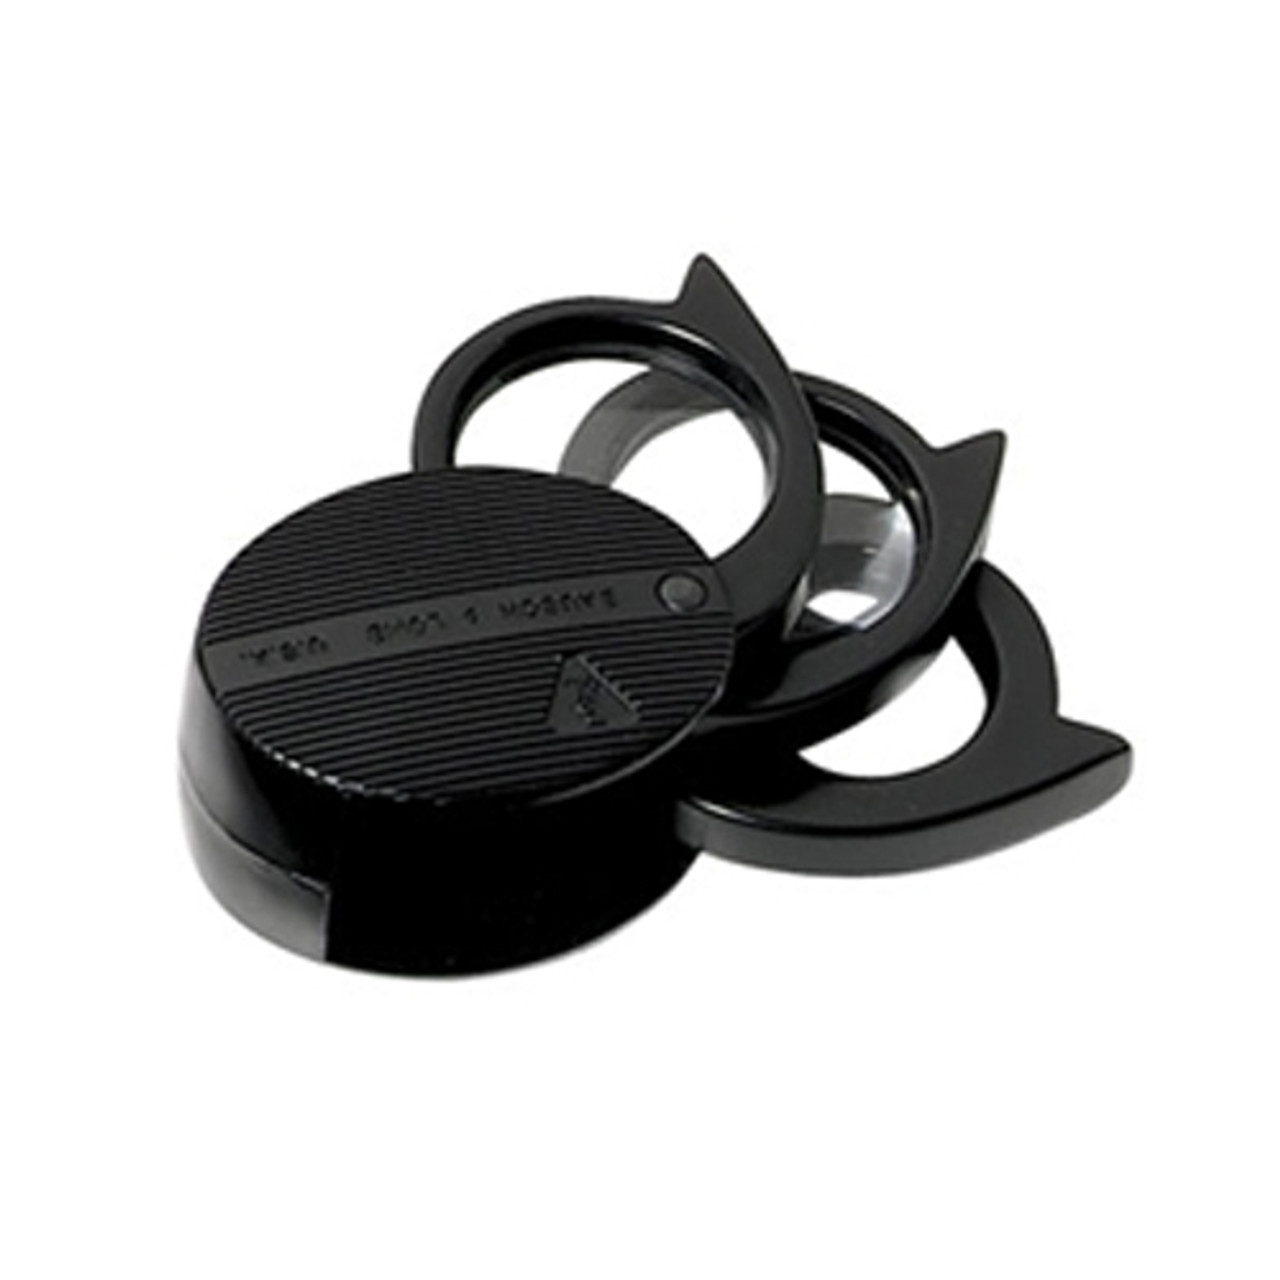 Bausch & Lomb® Folding Pocket Magnifier 5X-21X - 3 Lens